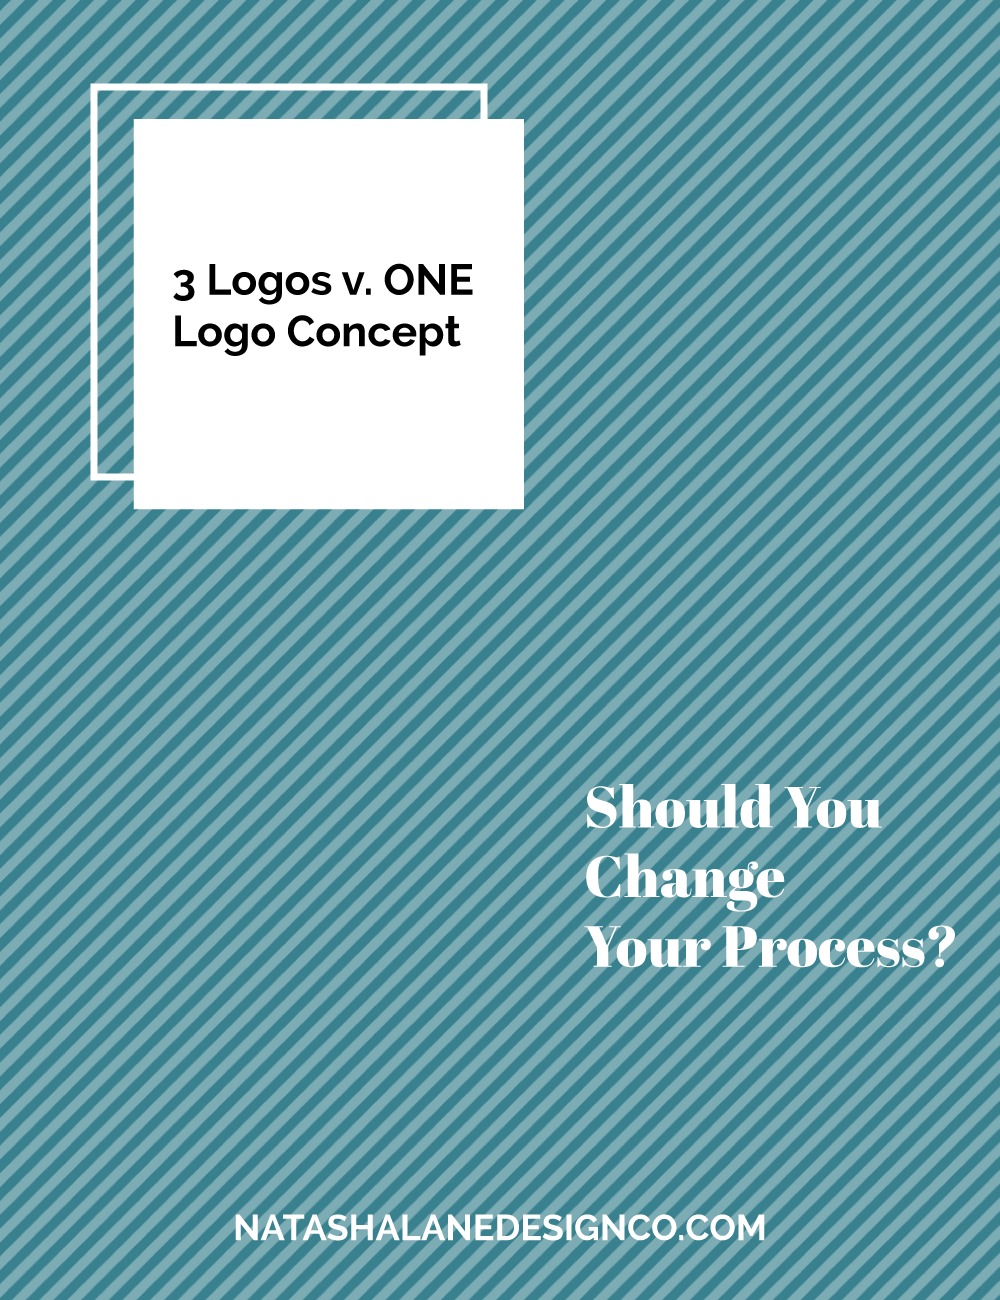 3 logos vs 1 logo concept 